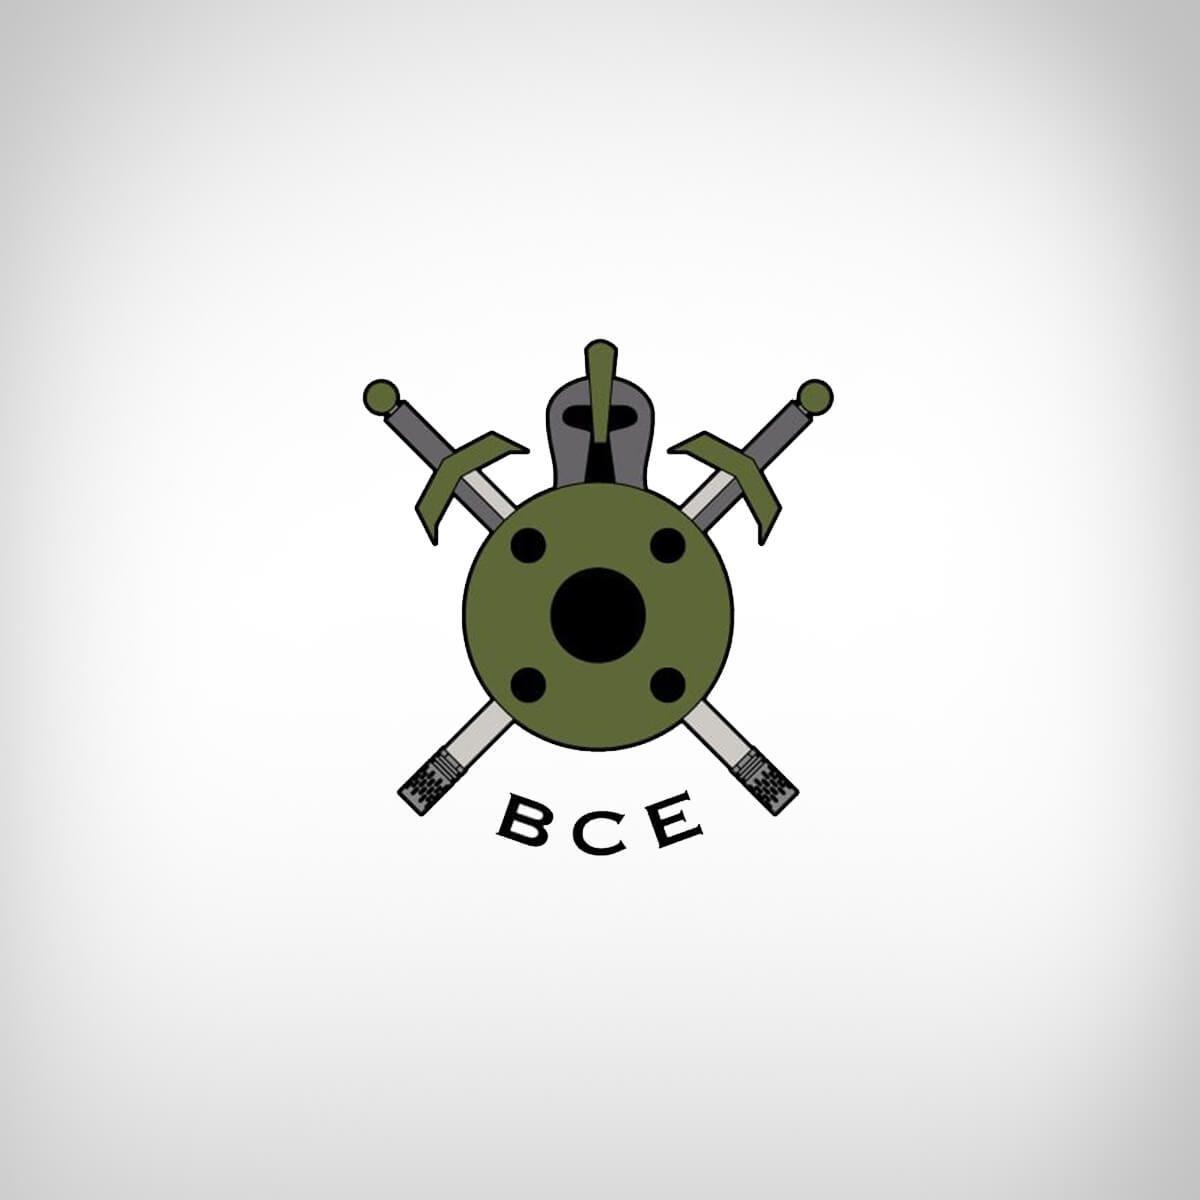 BattleComp Logo - Manufacturer: Battle Comp Enterprises | Battlecomp